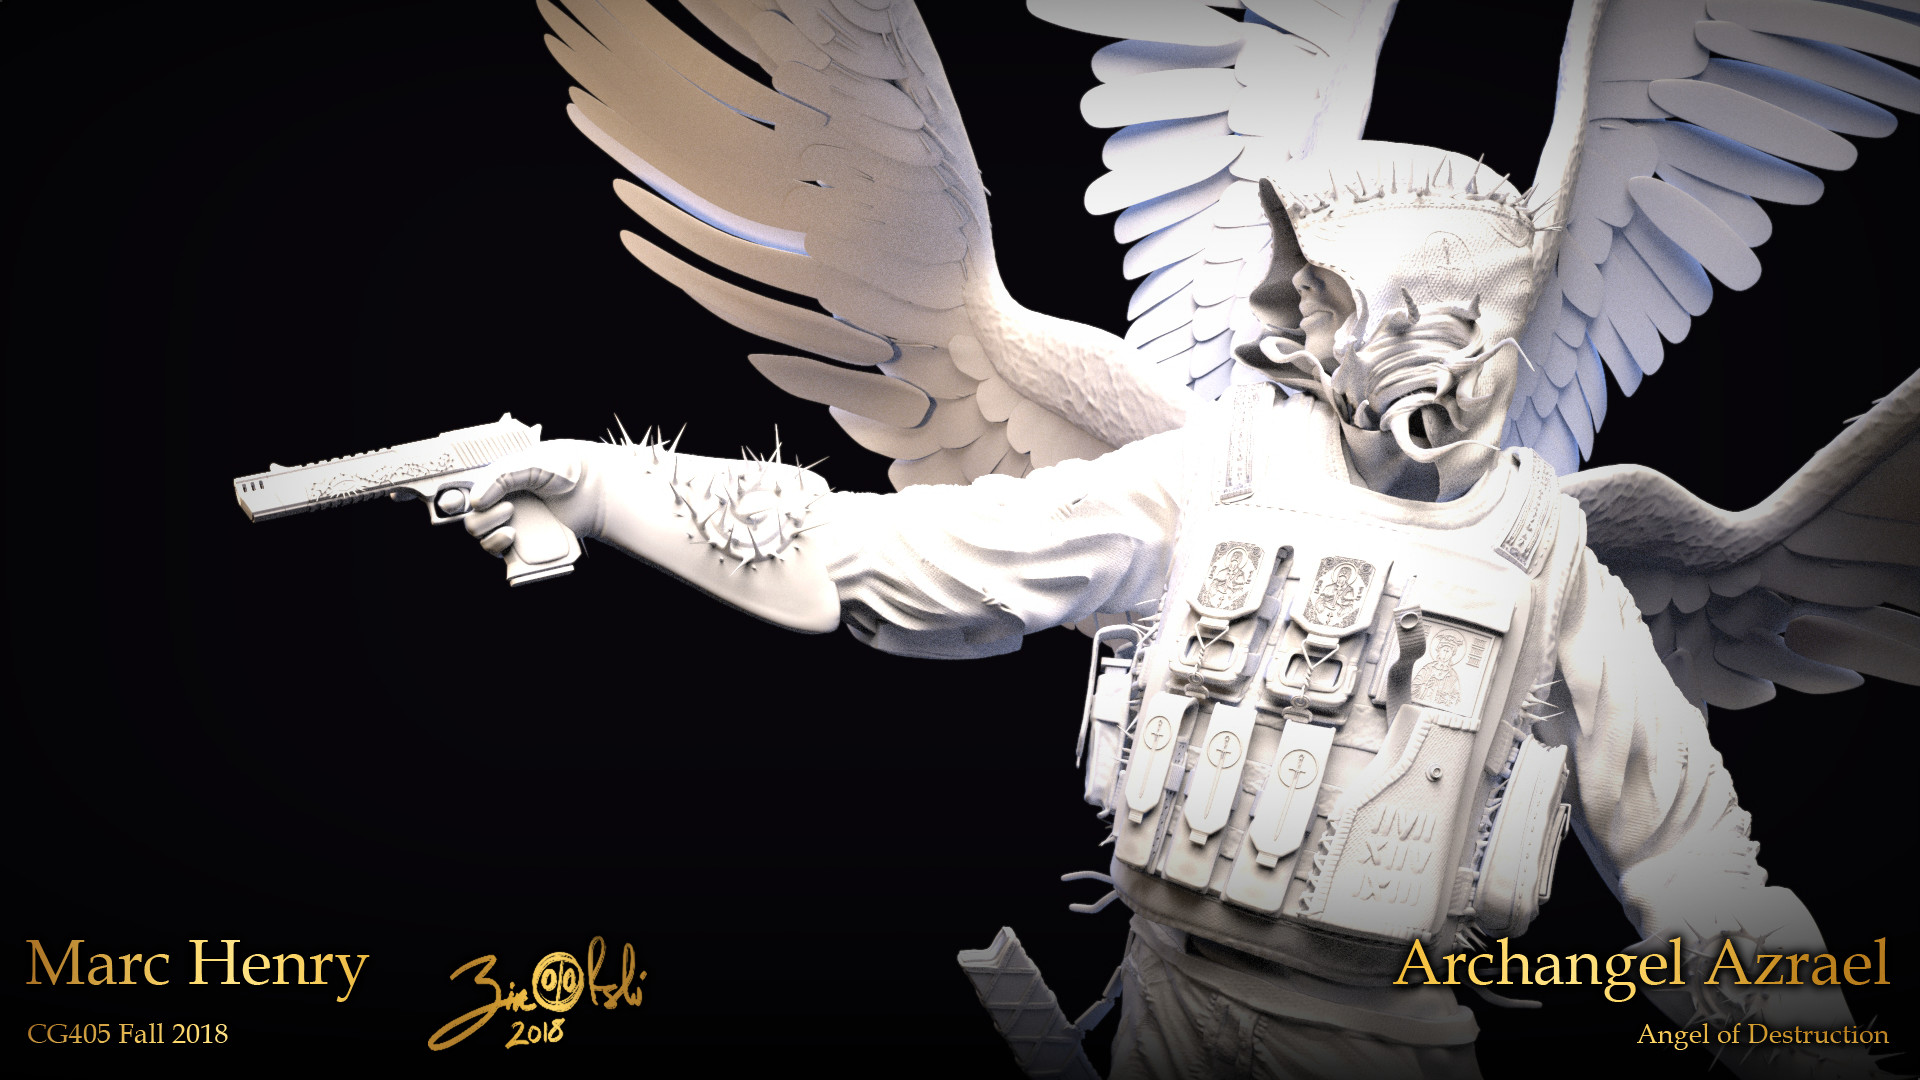 archangel azrael